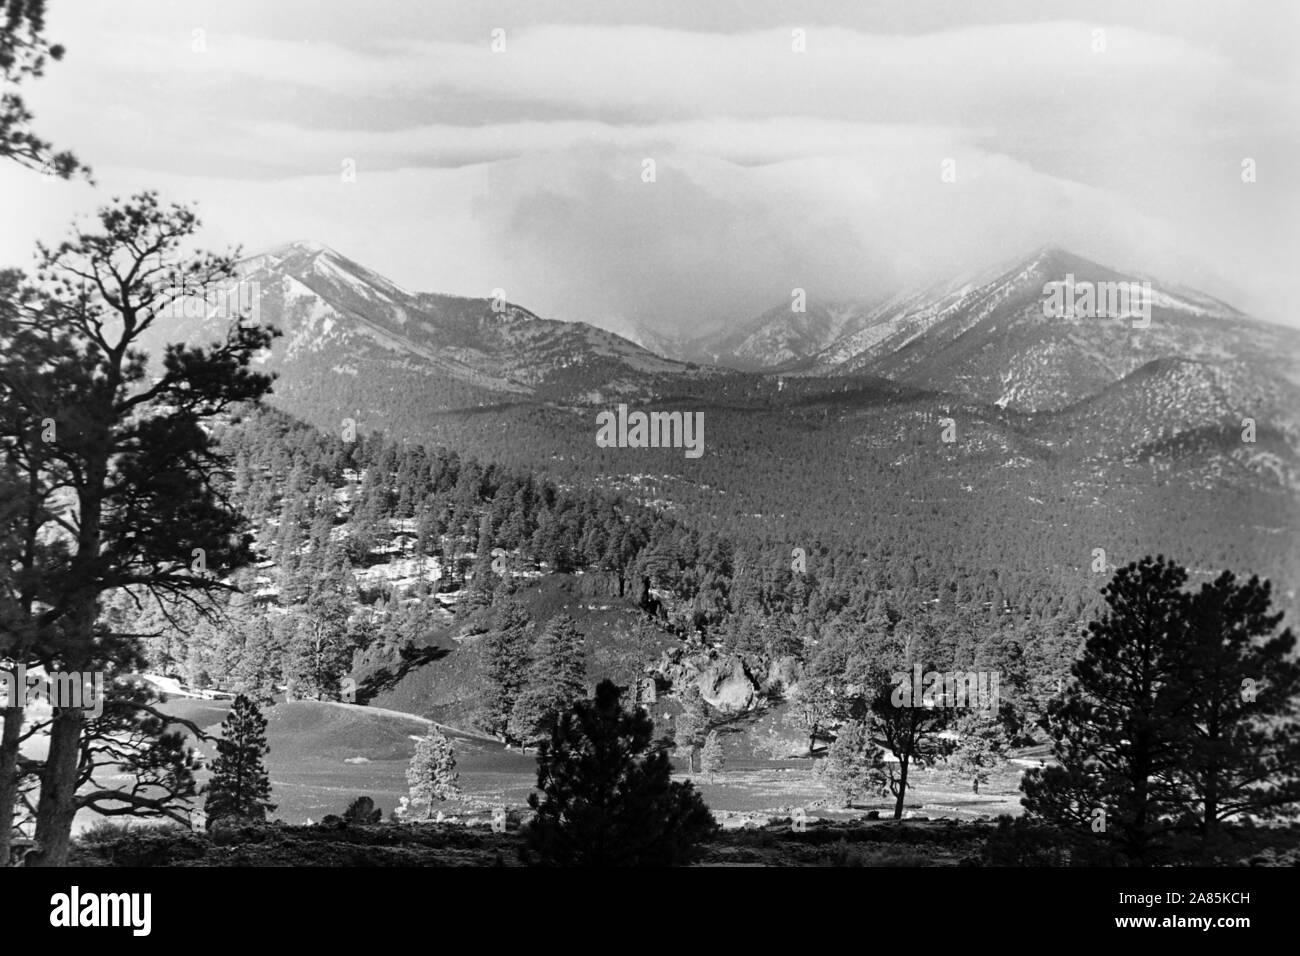 Humphreys Peak, Arizona, 1960er. Humphreys Peak, Arizona, 1960s. Stock Photo